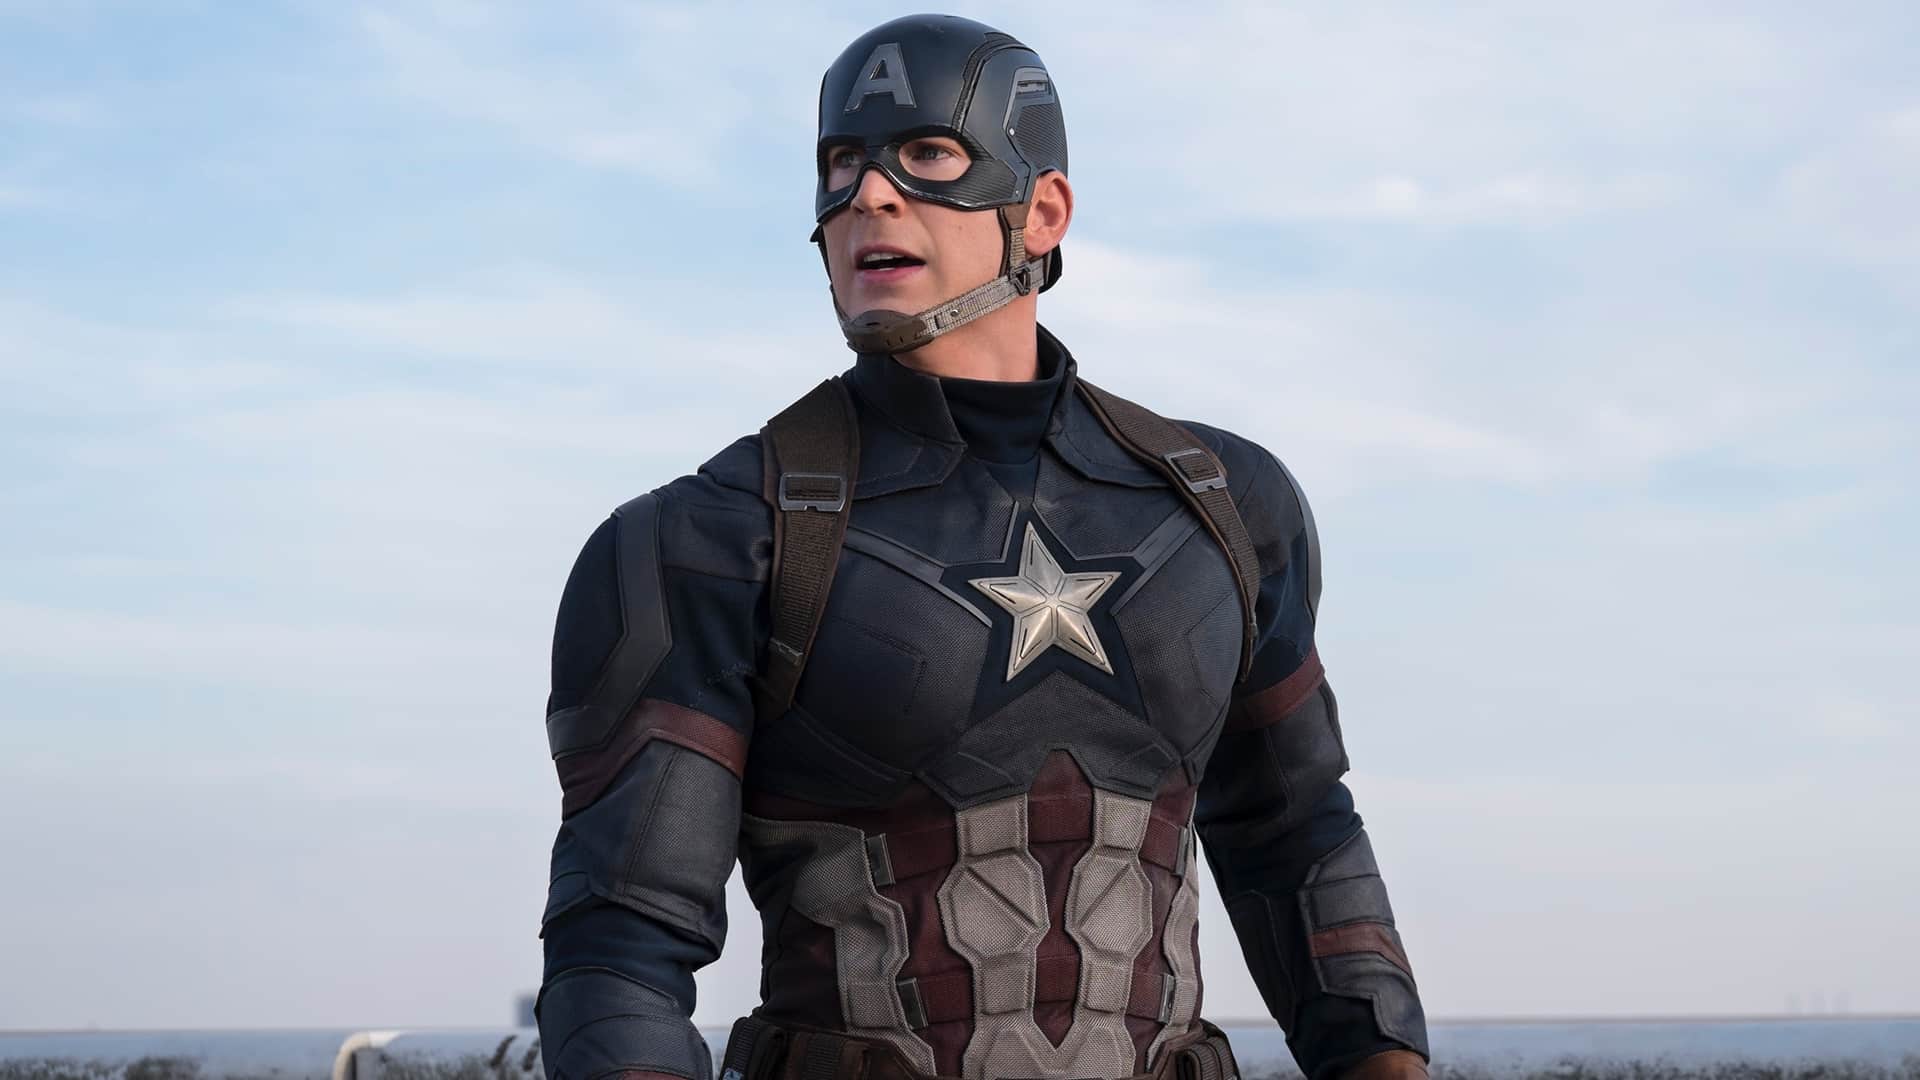 Recensione film Captain America The Winter Soldier, l'attualità del soldato Chris Evans